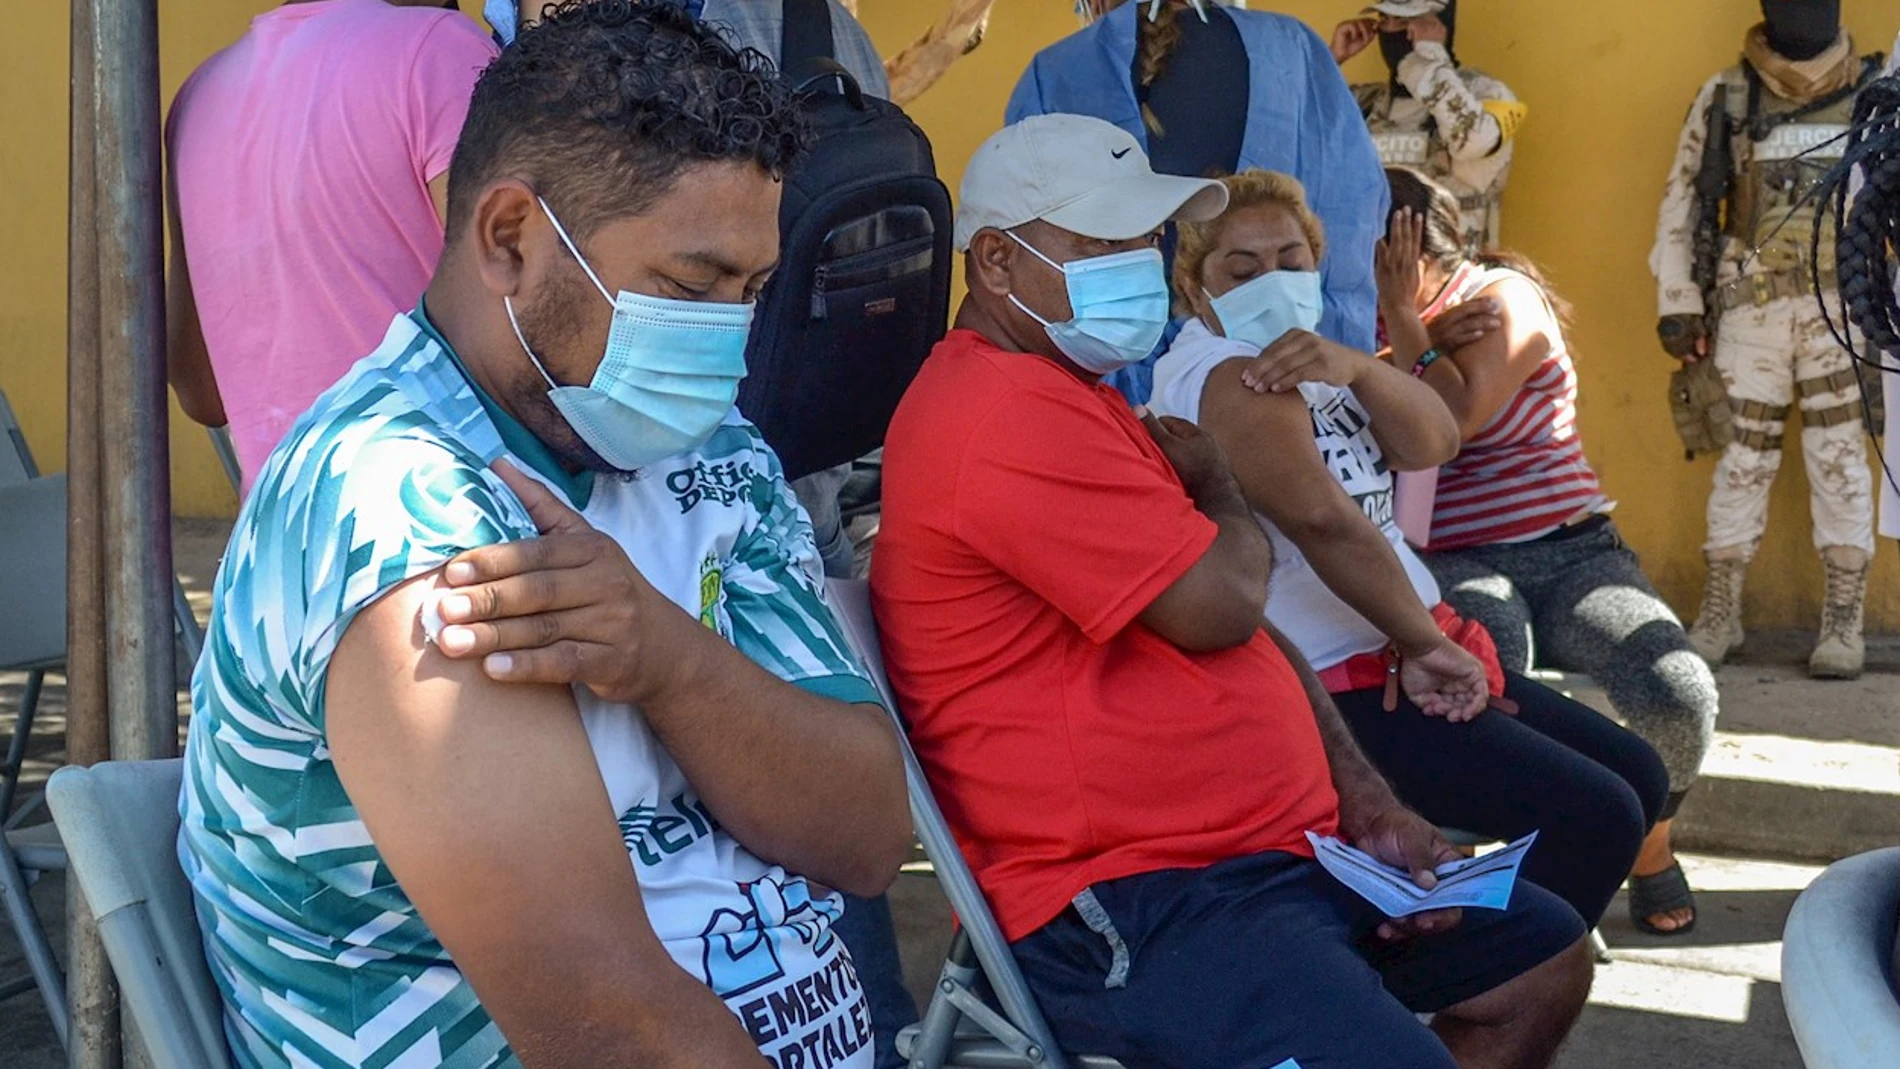  Varias personas migrantes reposan tras ser vacunados contra la Covid-19 hoy, en Tijuana, estado de Baja California (México). Migrantes de Centroamérica, Colombia, Haití y de otras países que acampan en el cruce fronterizo de El Chaparral en la ciudad mexicana de Tijuana, recibieron este martes su primera dosis de la vacuna anticovid de la farmacéutica Pfizer